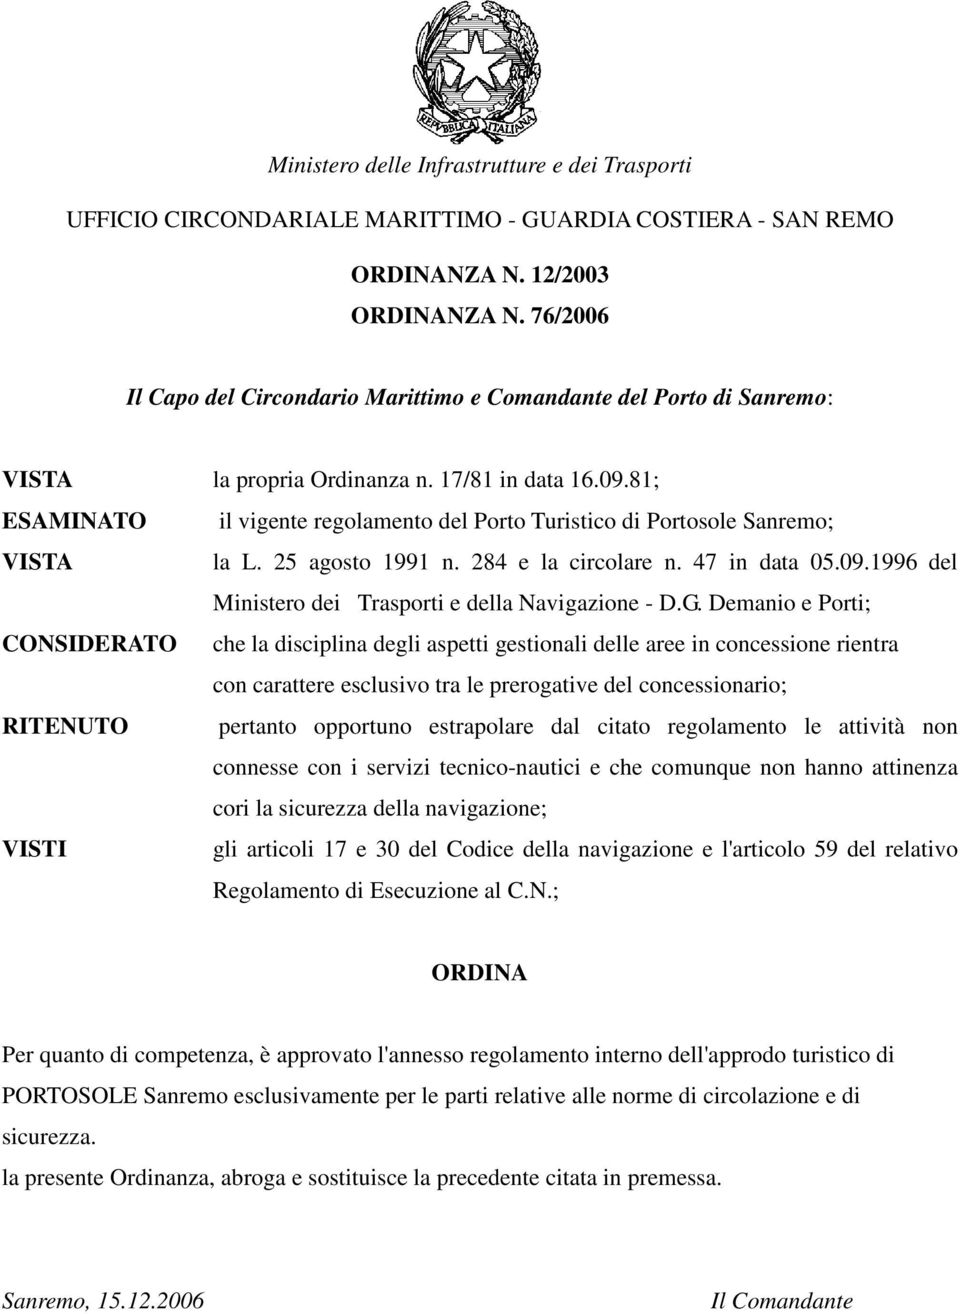 81; ESAMINATO il vigente regolamento del Porto Turistico di Portosole Sanremo; VISTA la L. 25 agosto 1991 n. 284 e la circolare n. 47 in data 05.09.